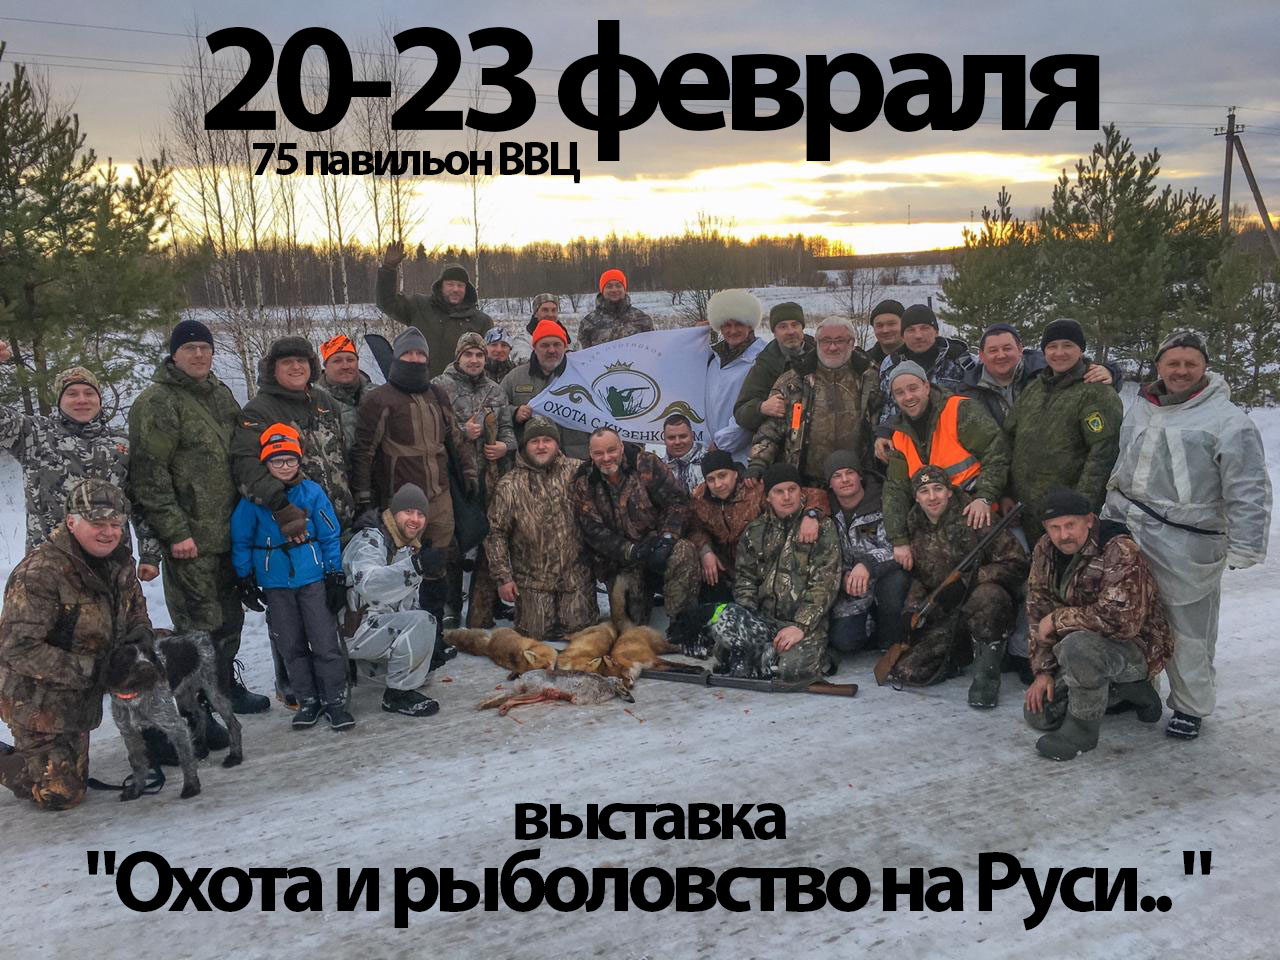 c 20 февраля по 23 февраля в 75 павильоне ВВЦ пройдёт выставка «Охота и рыболовство на Руси..»